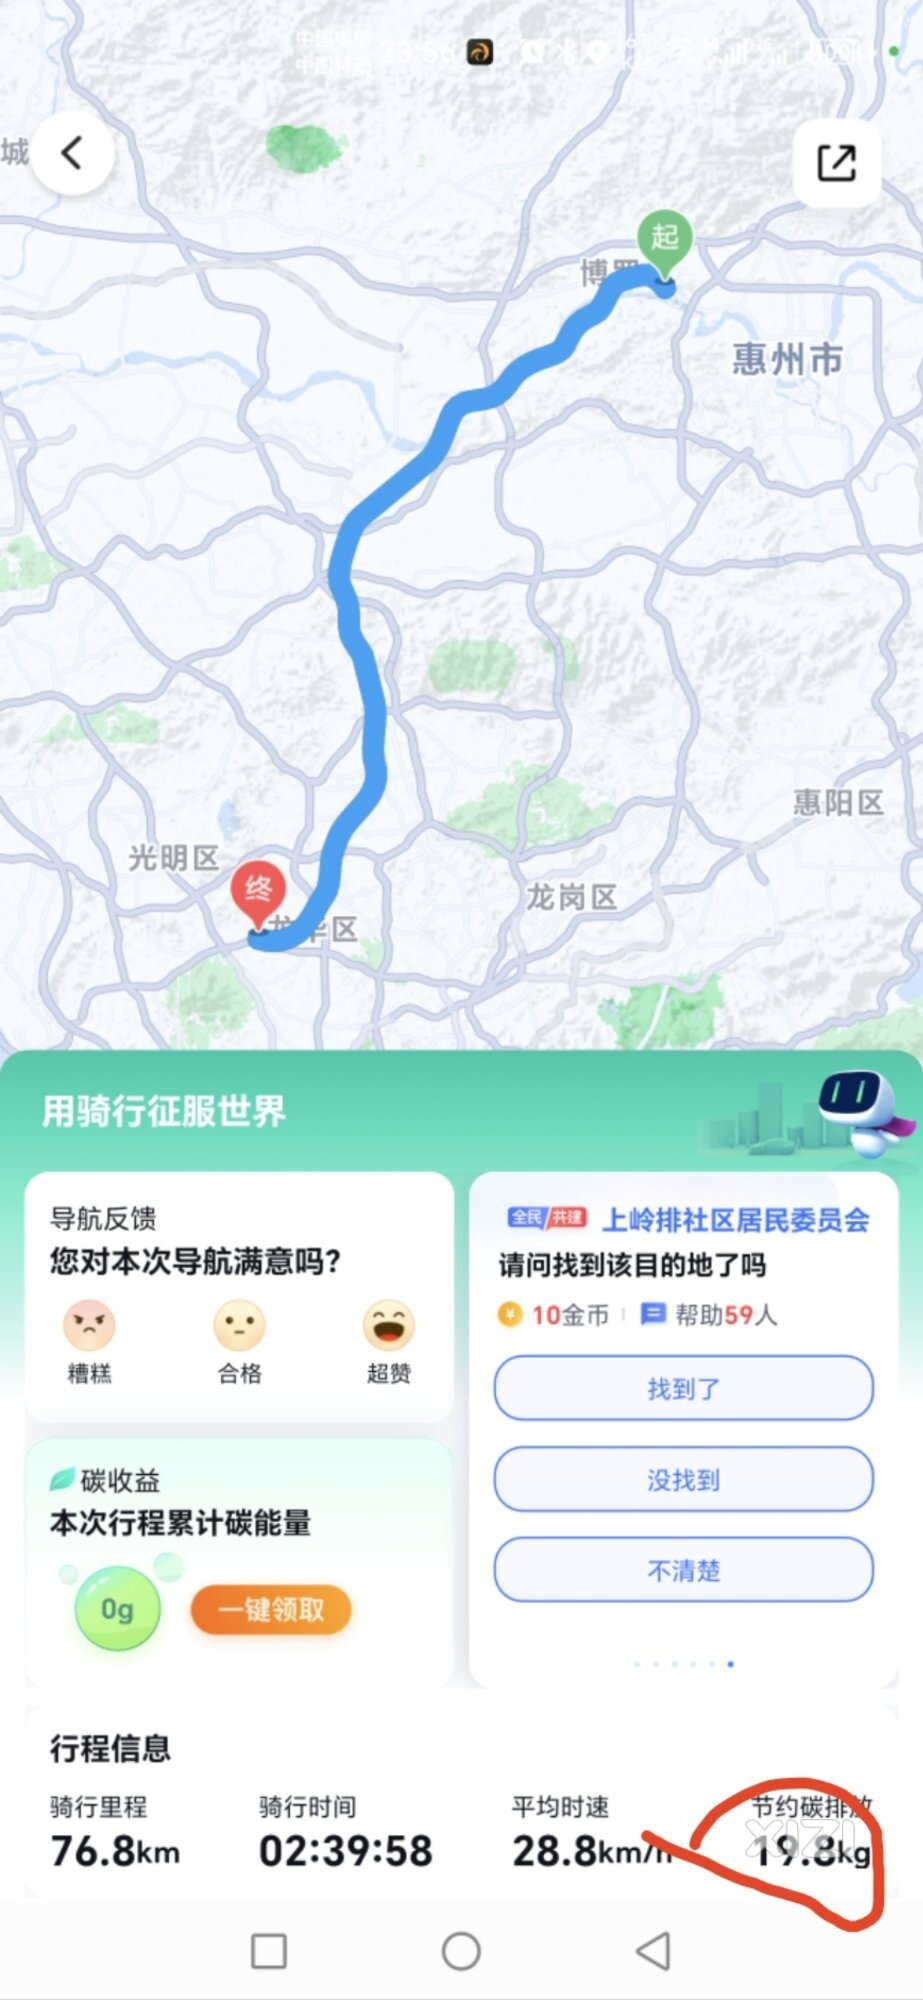 住在博罗在深圳工作的有吗？